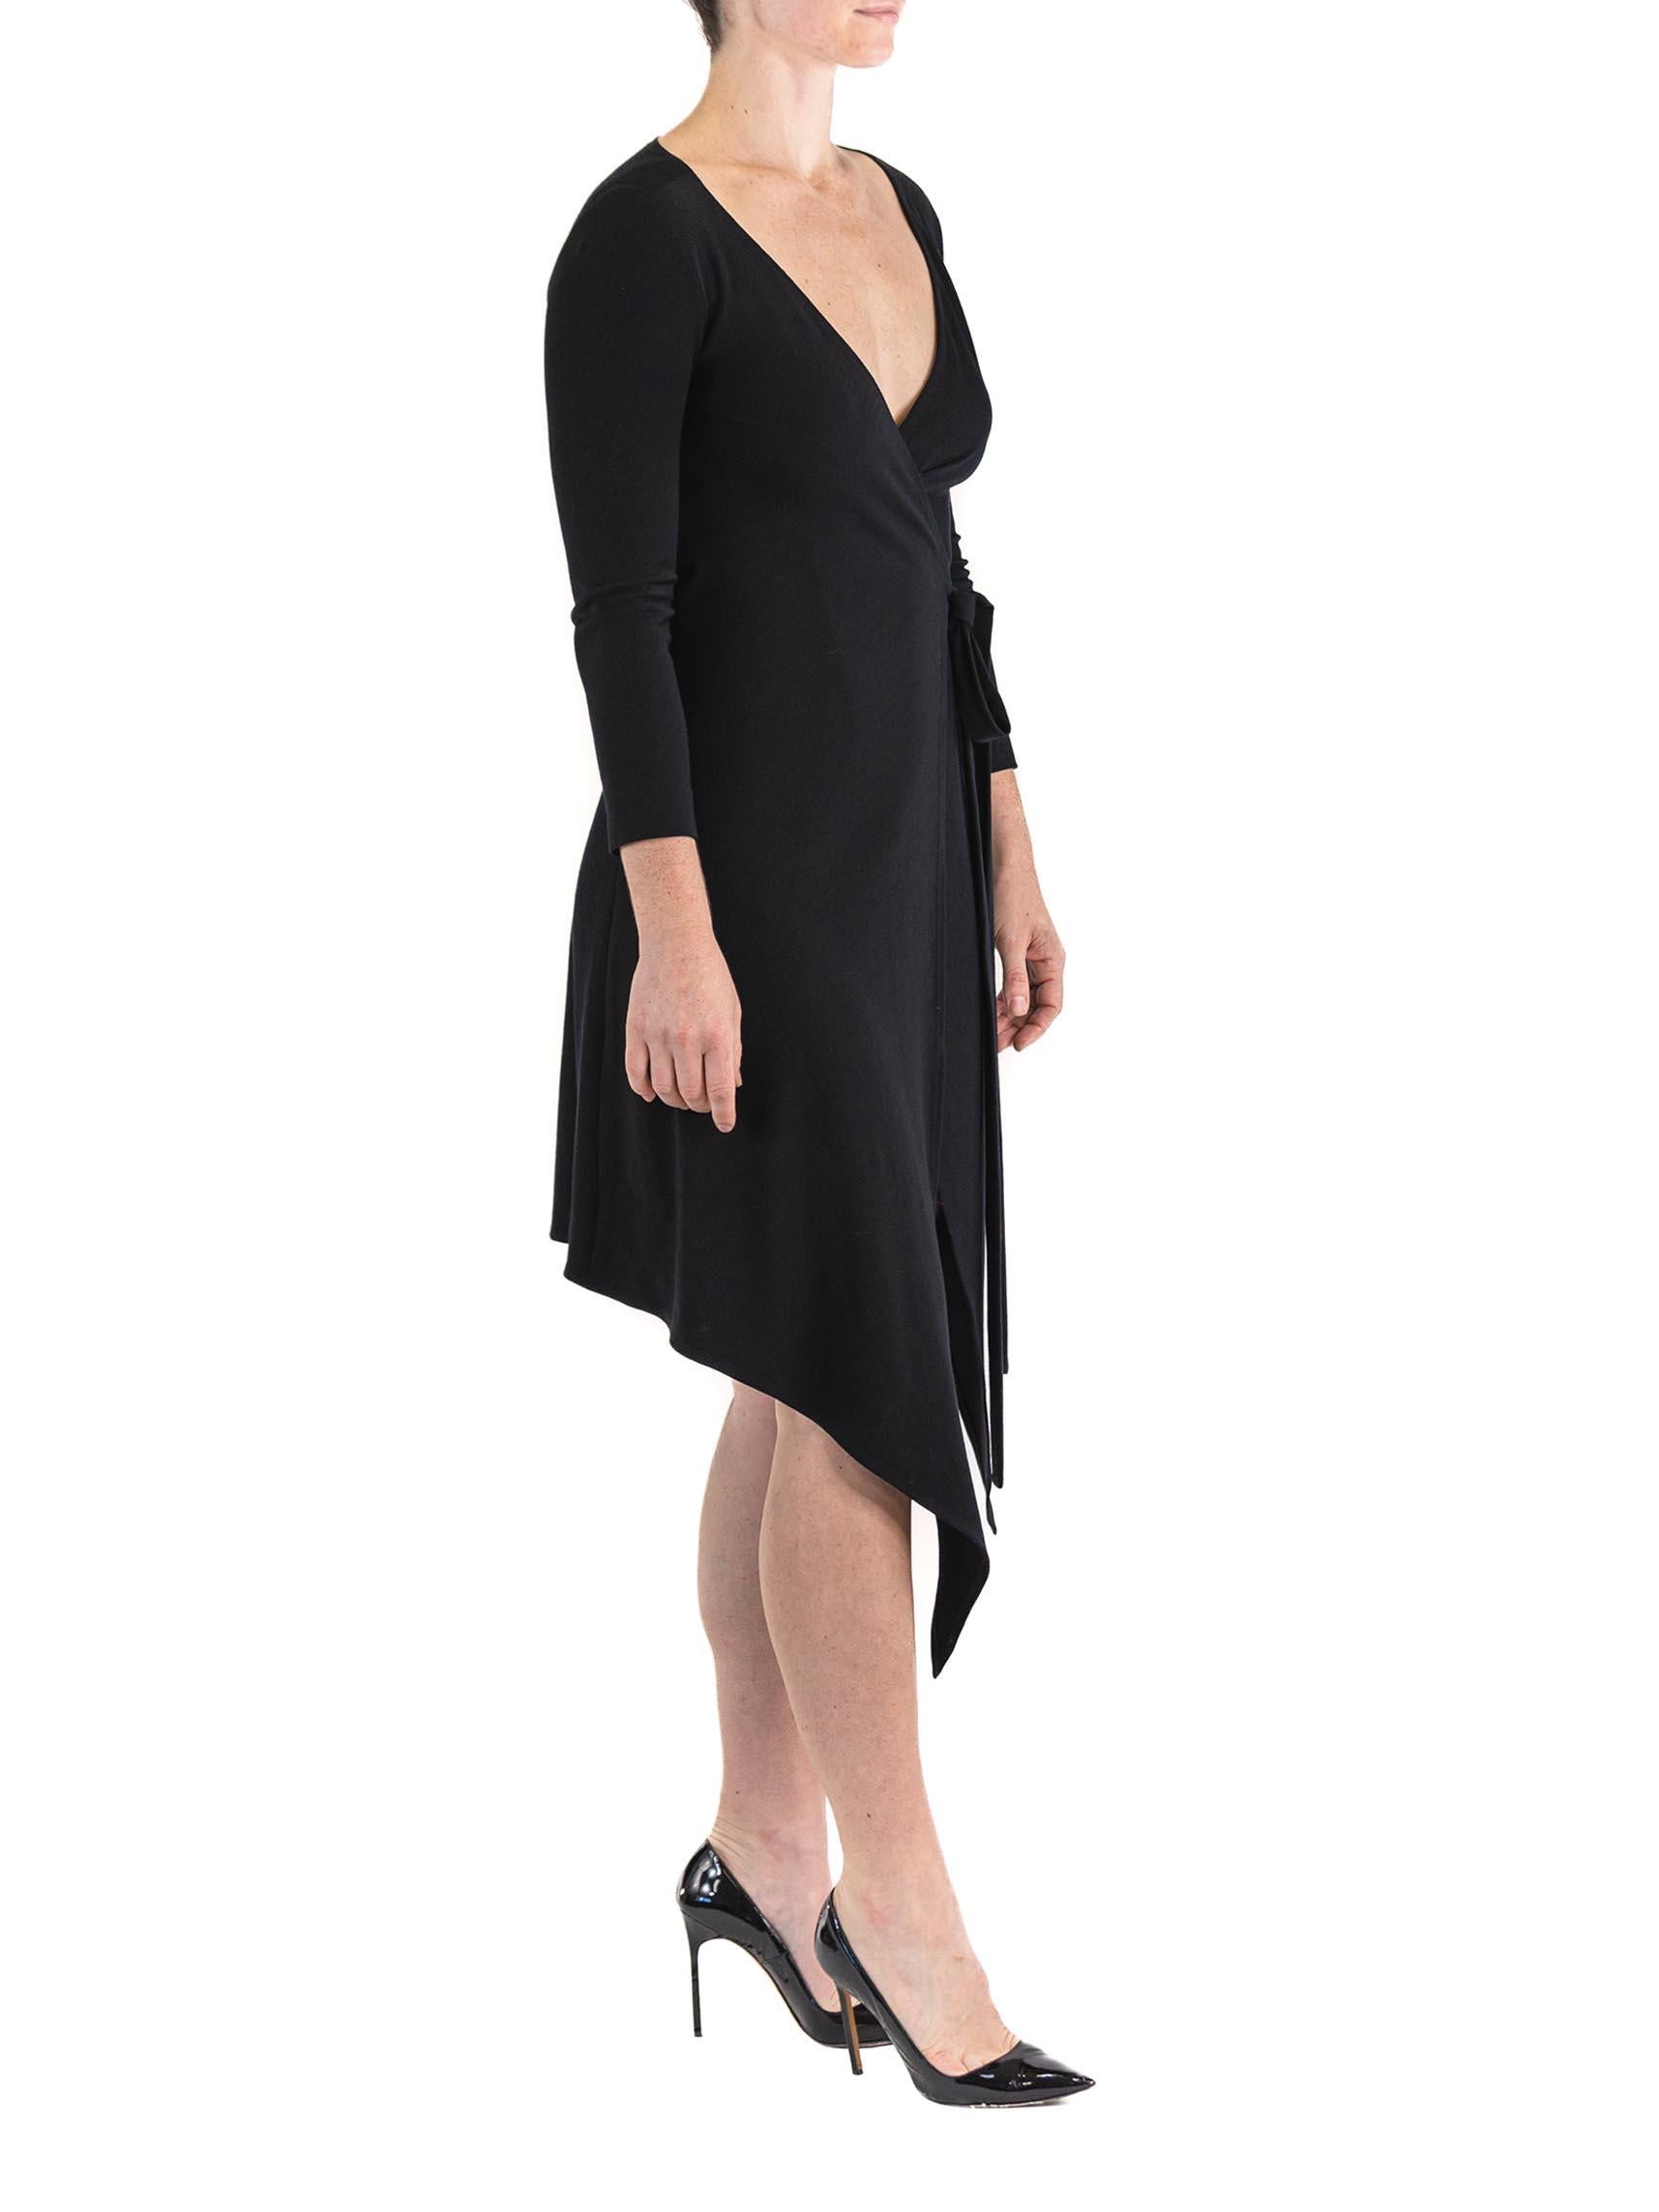 1980S DONNA KARAN Black Wool Knit Belted Wrap Dress For Sale 3